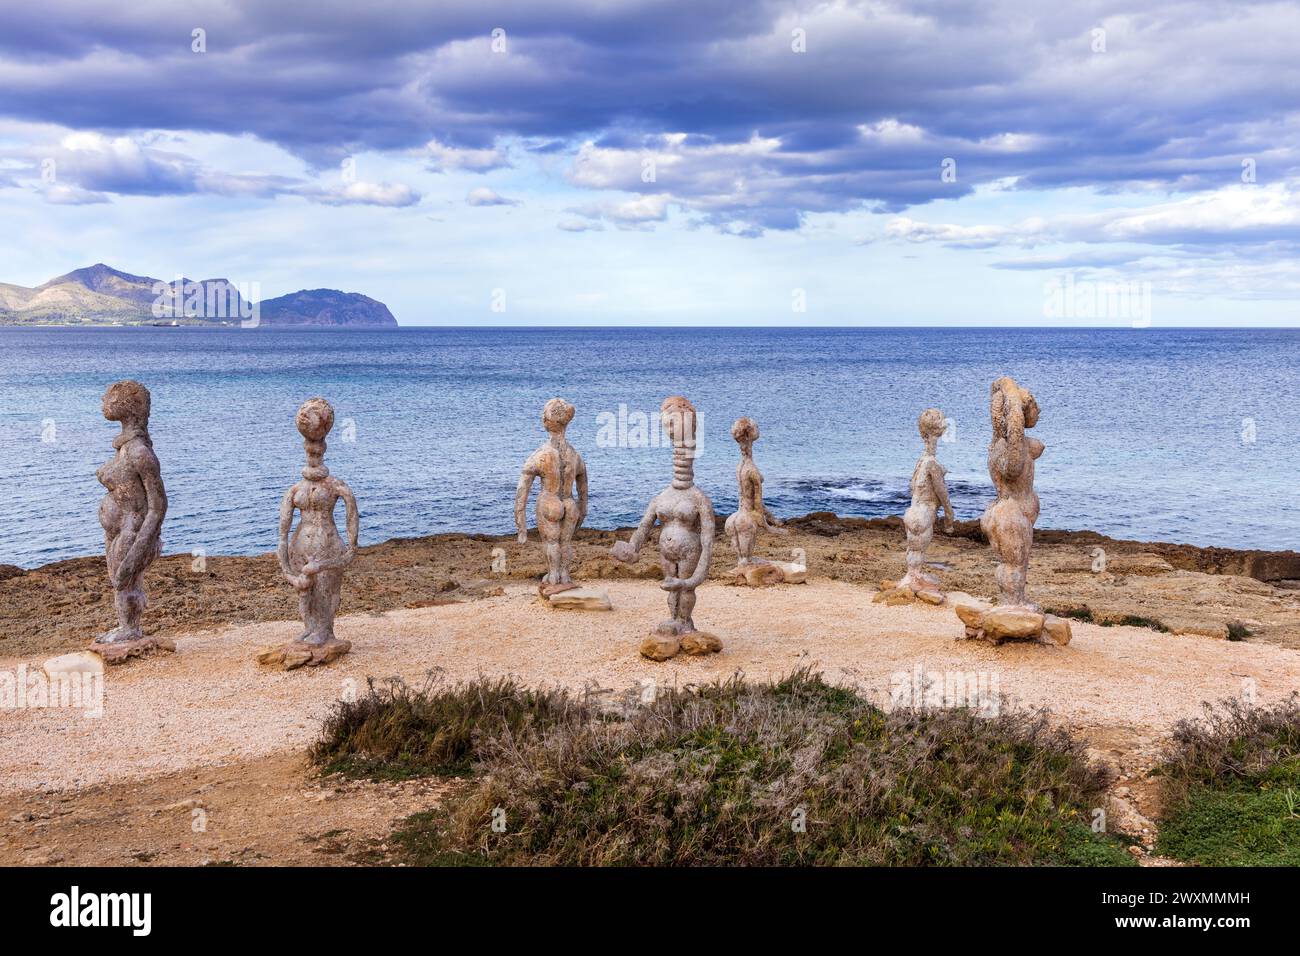 Le sculture di Joan Bennassar sulla spiaggia di CAN Picafort, Maiorca, Spagna. Foto Stock